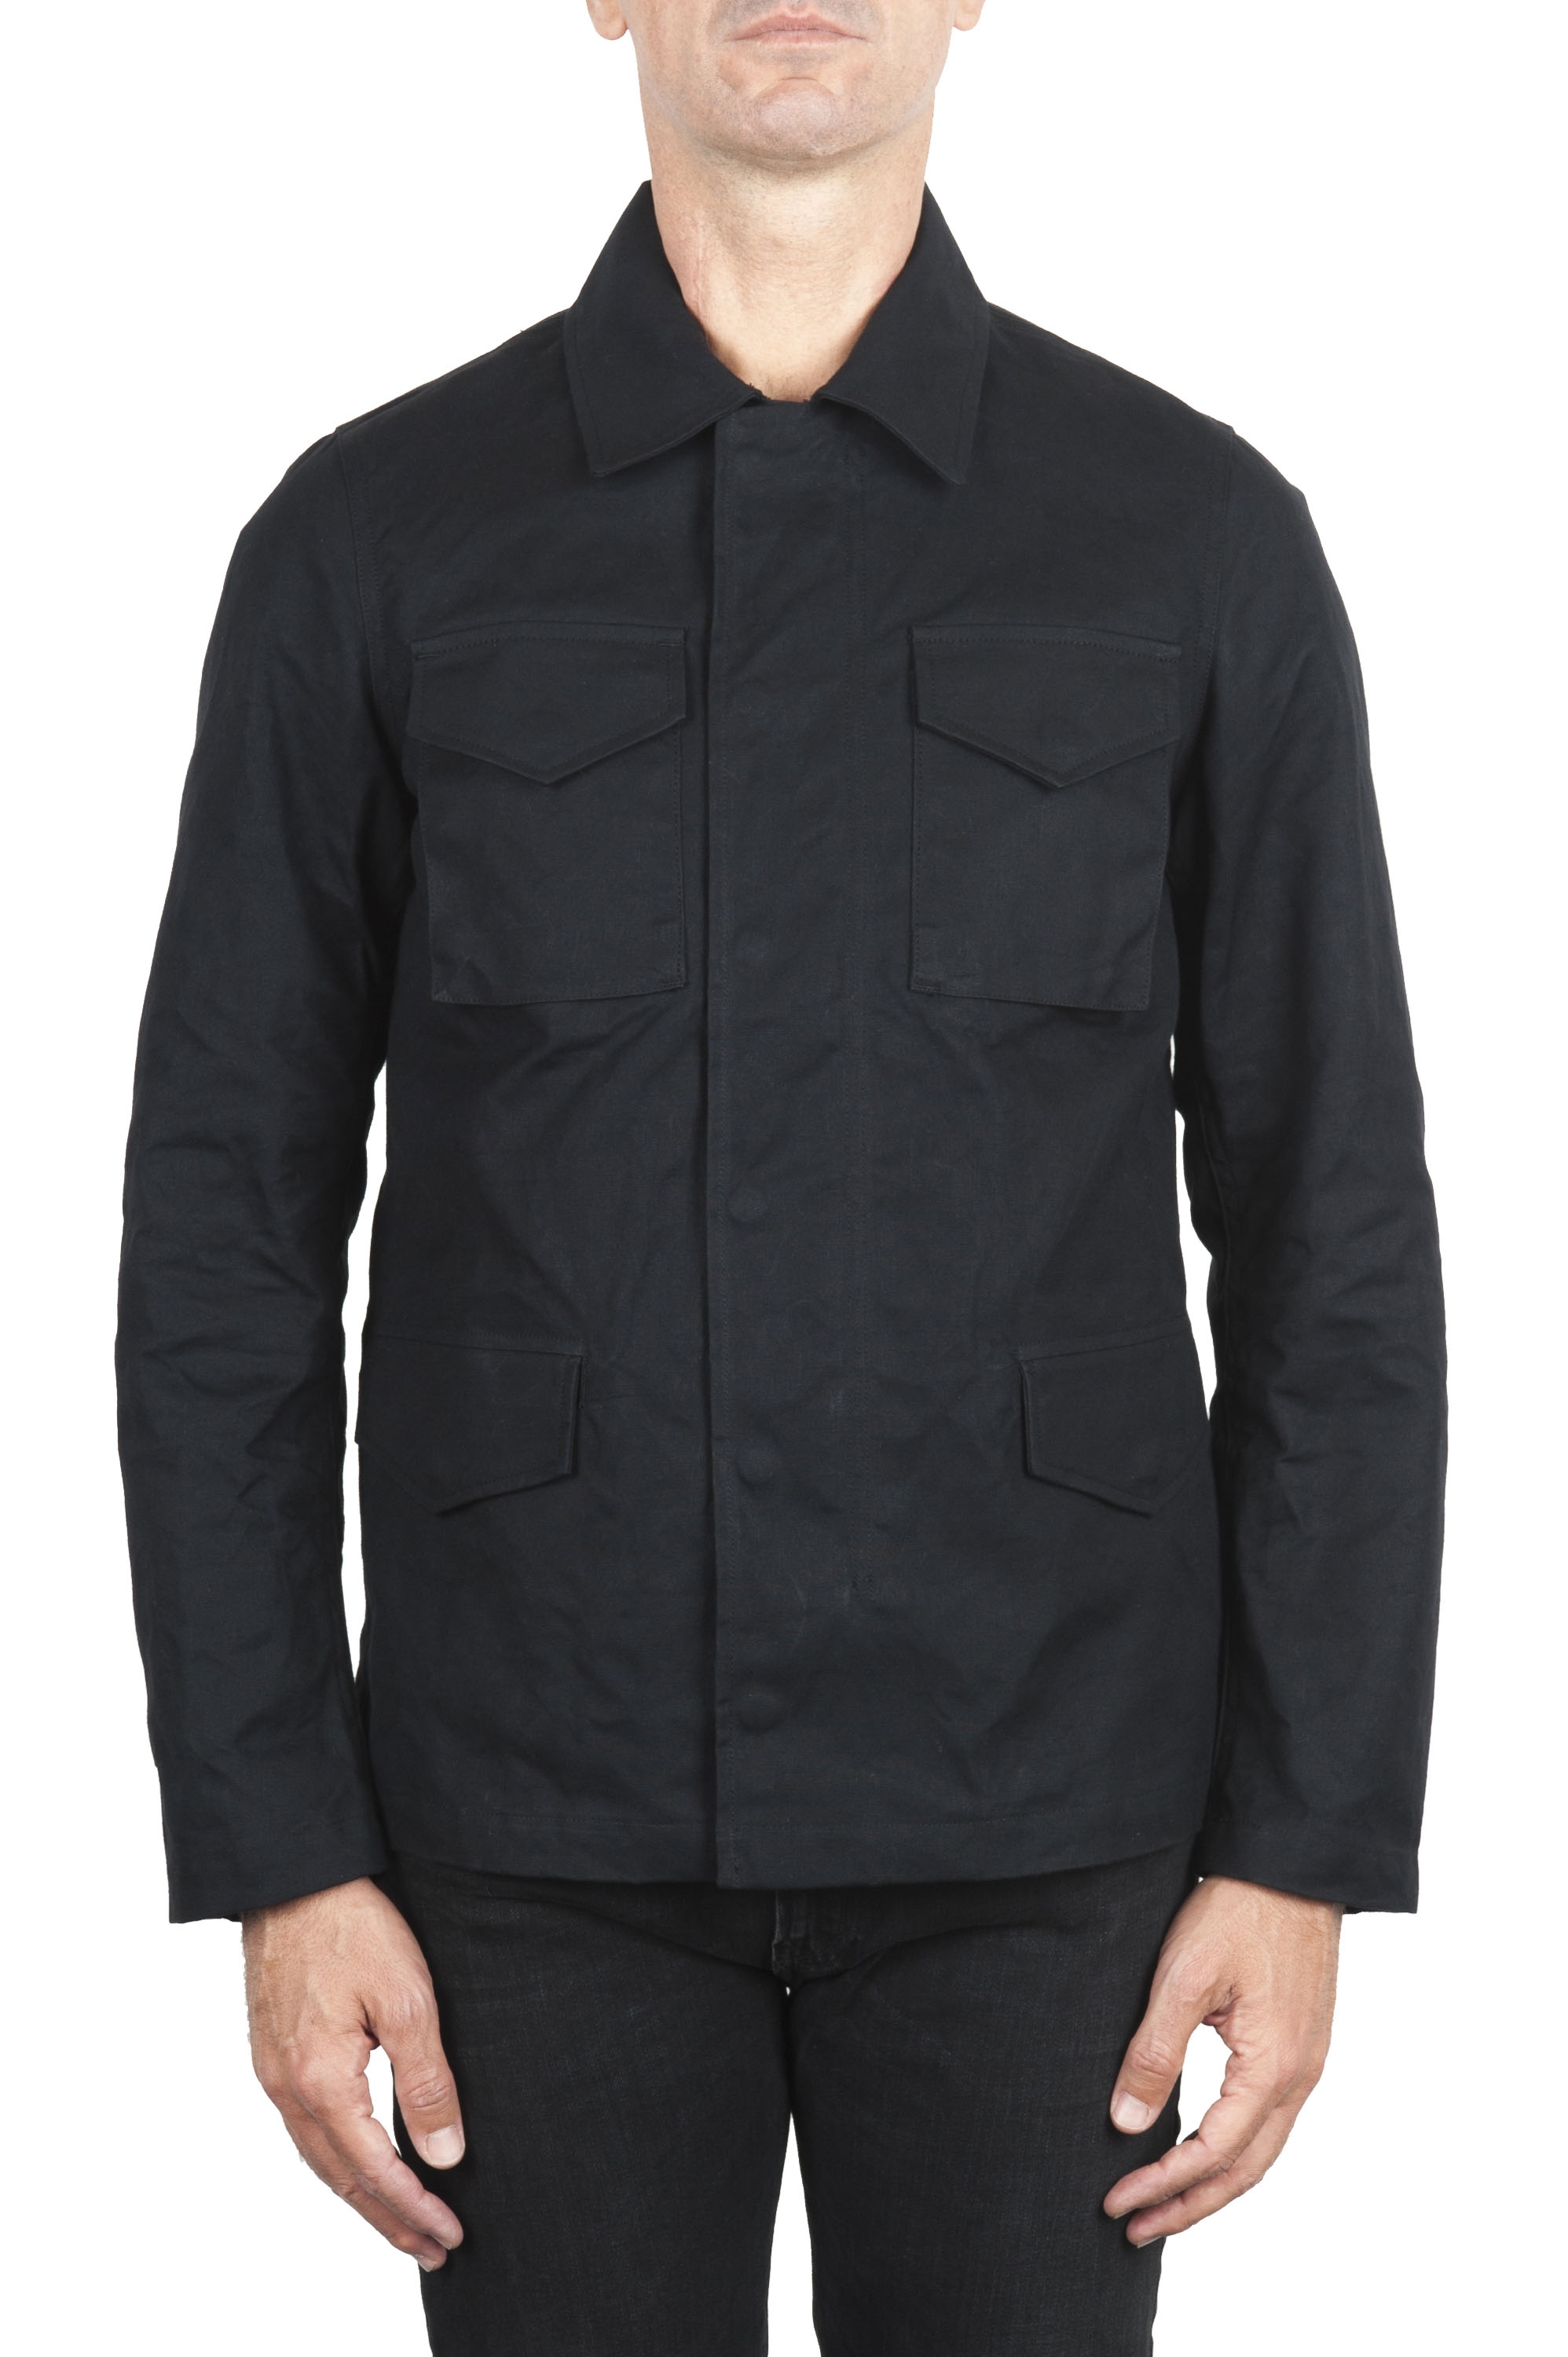 SBU 01560 風と防水のハンタージャケット、黒色の綿花 01